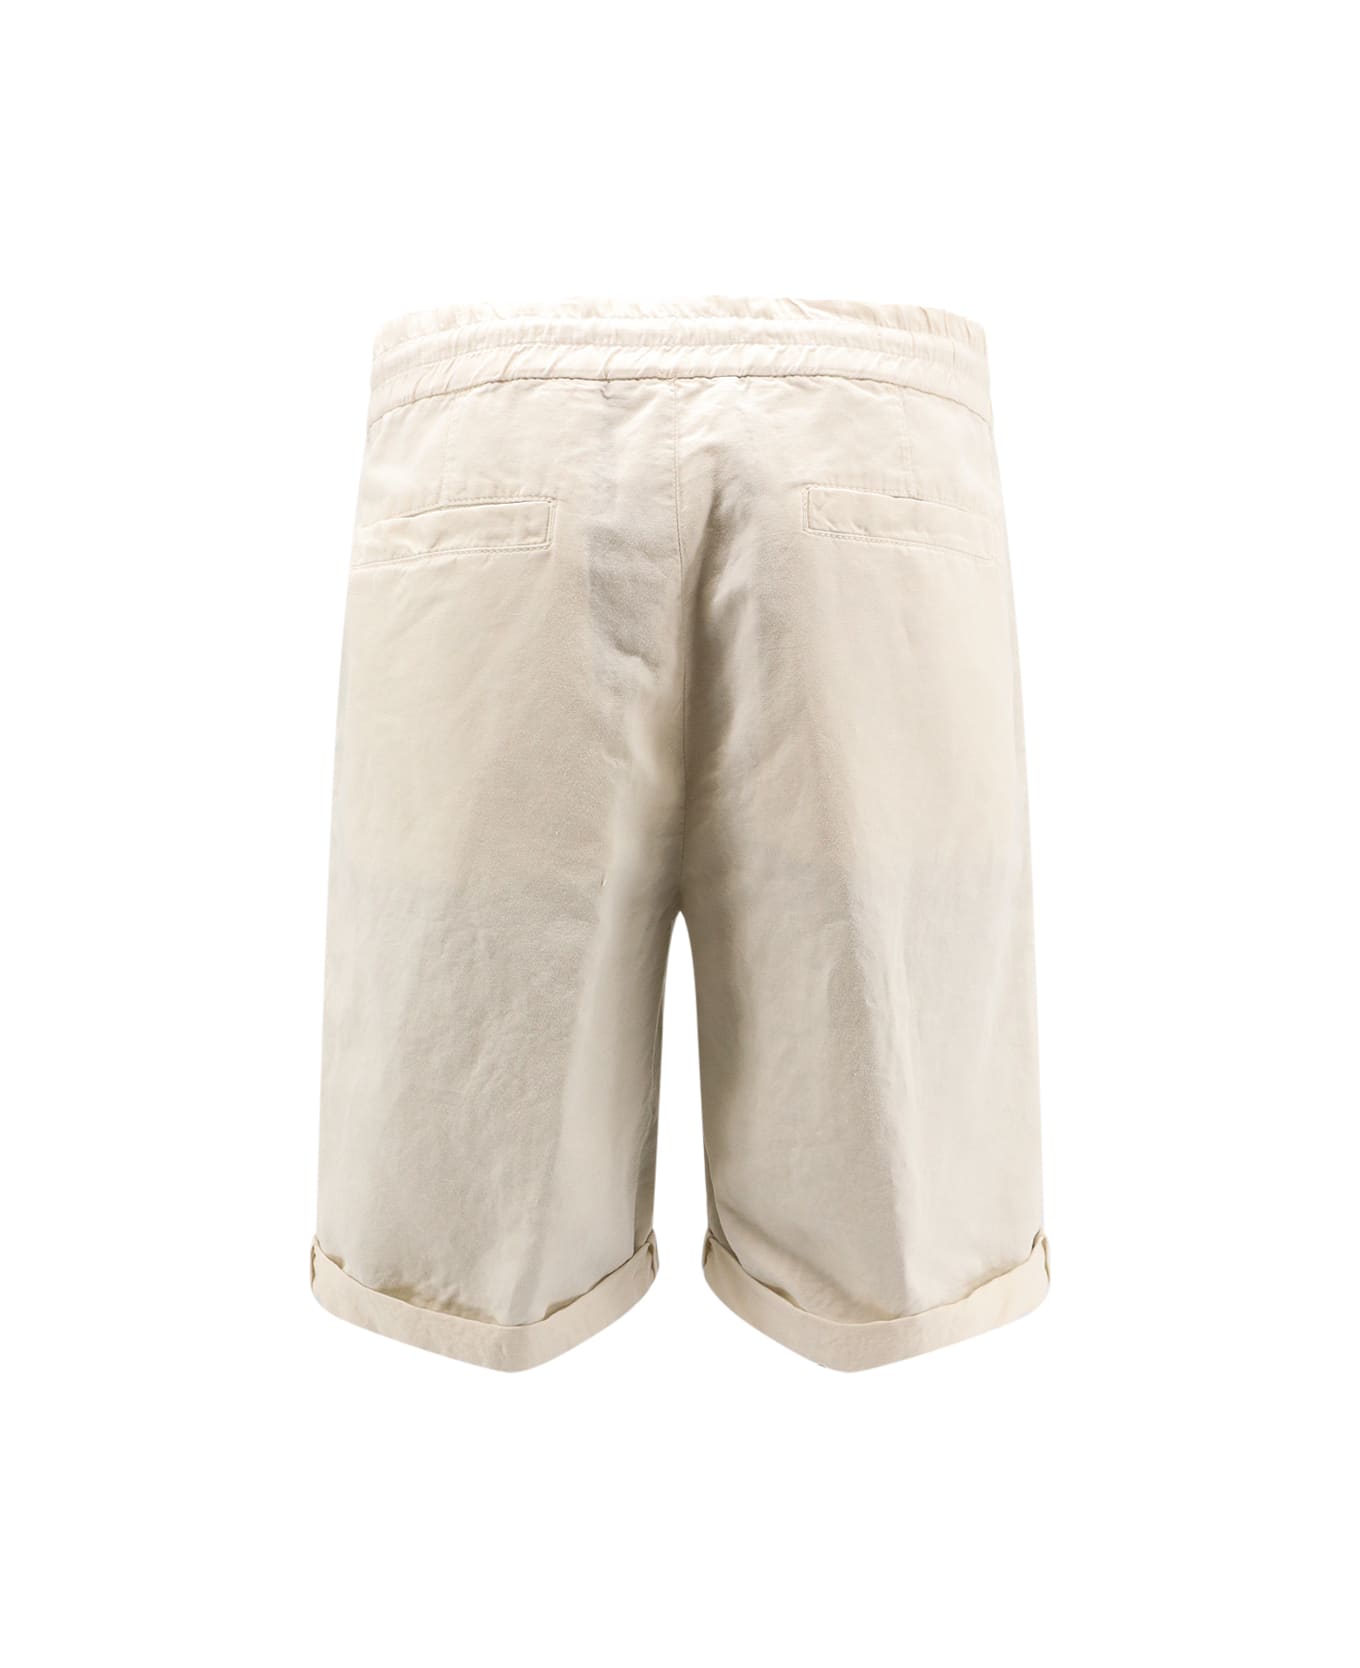 Brunello Cucinelli Bermuda Shorts - White